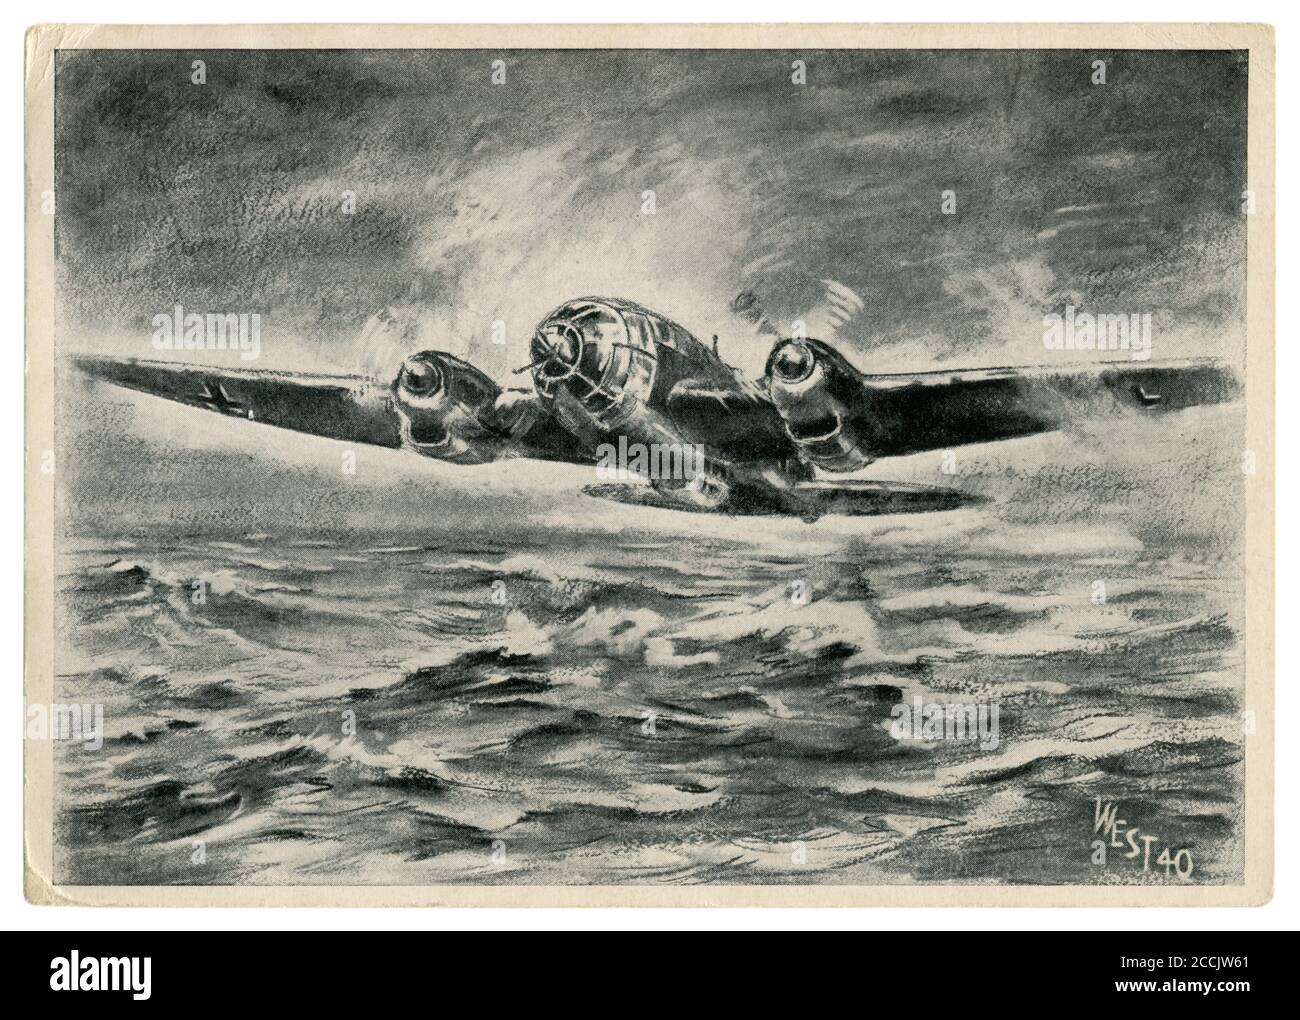 Cartolina storica tedesca: Un bombardiere Heinkel He 111 sulle acque ruvide del Mare del Nord sta volando per bombardare le città d'Inghilterra. Battaglia della Gran Bretagna Foto Stock